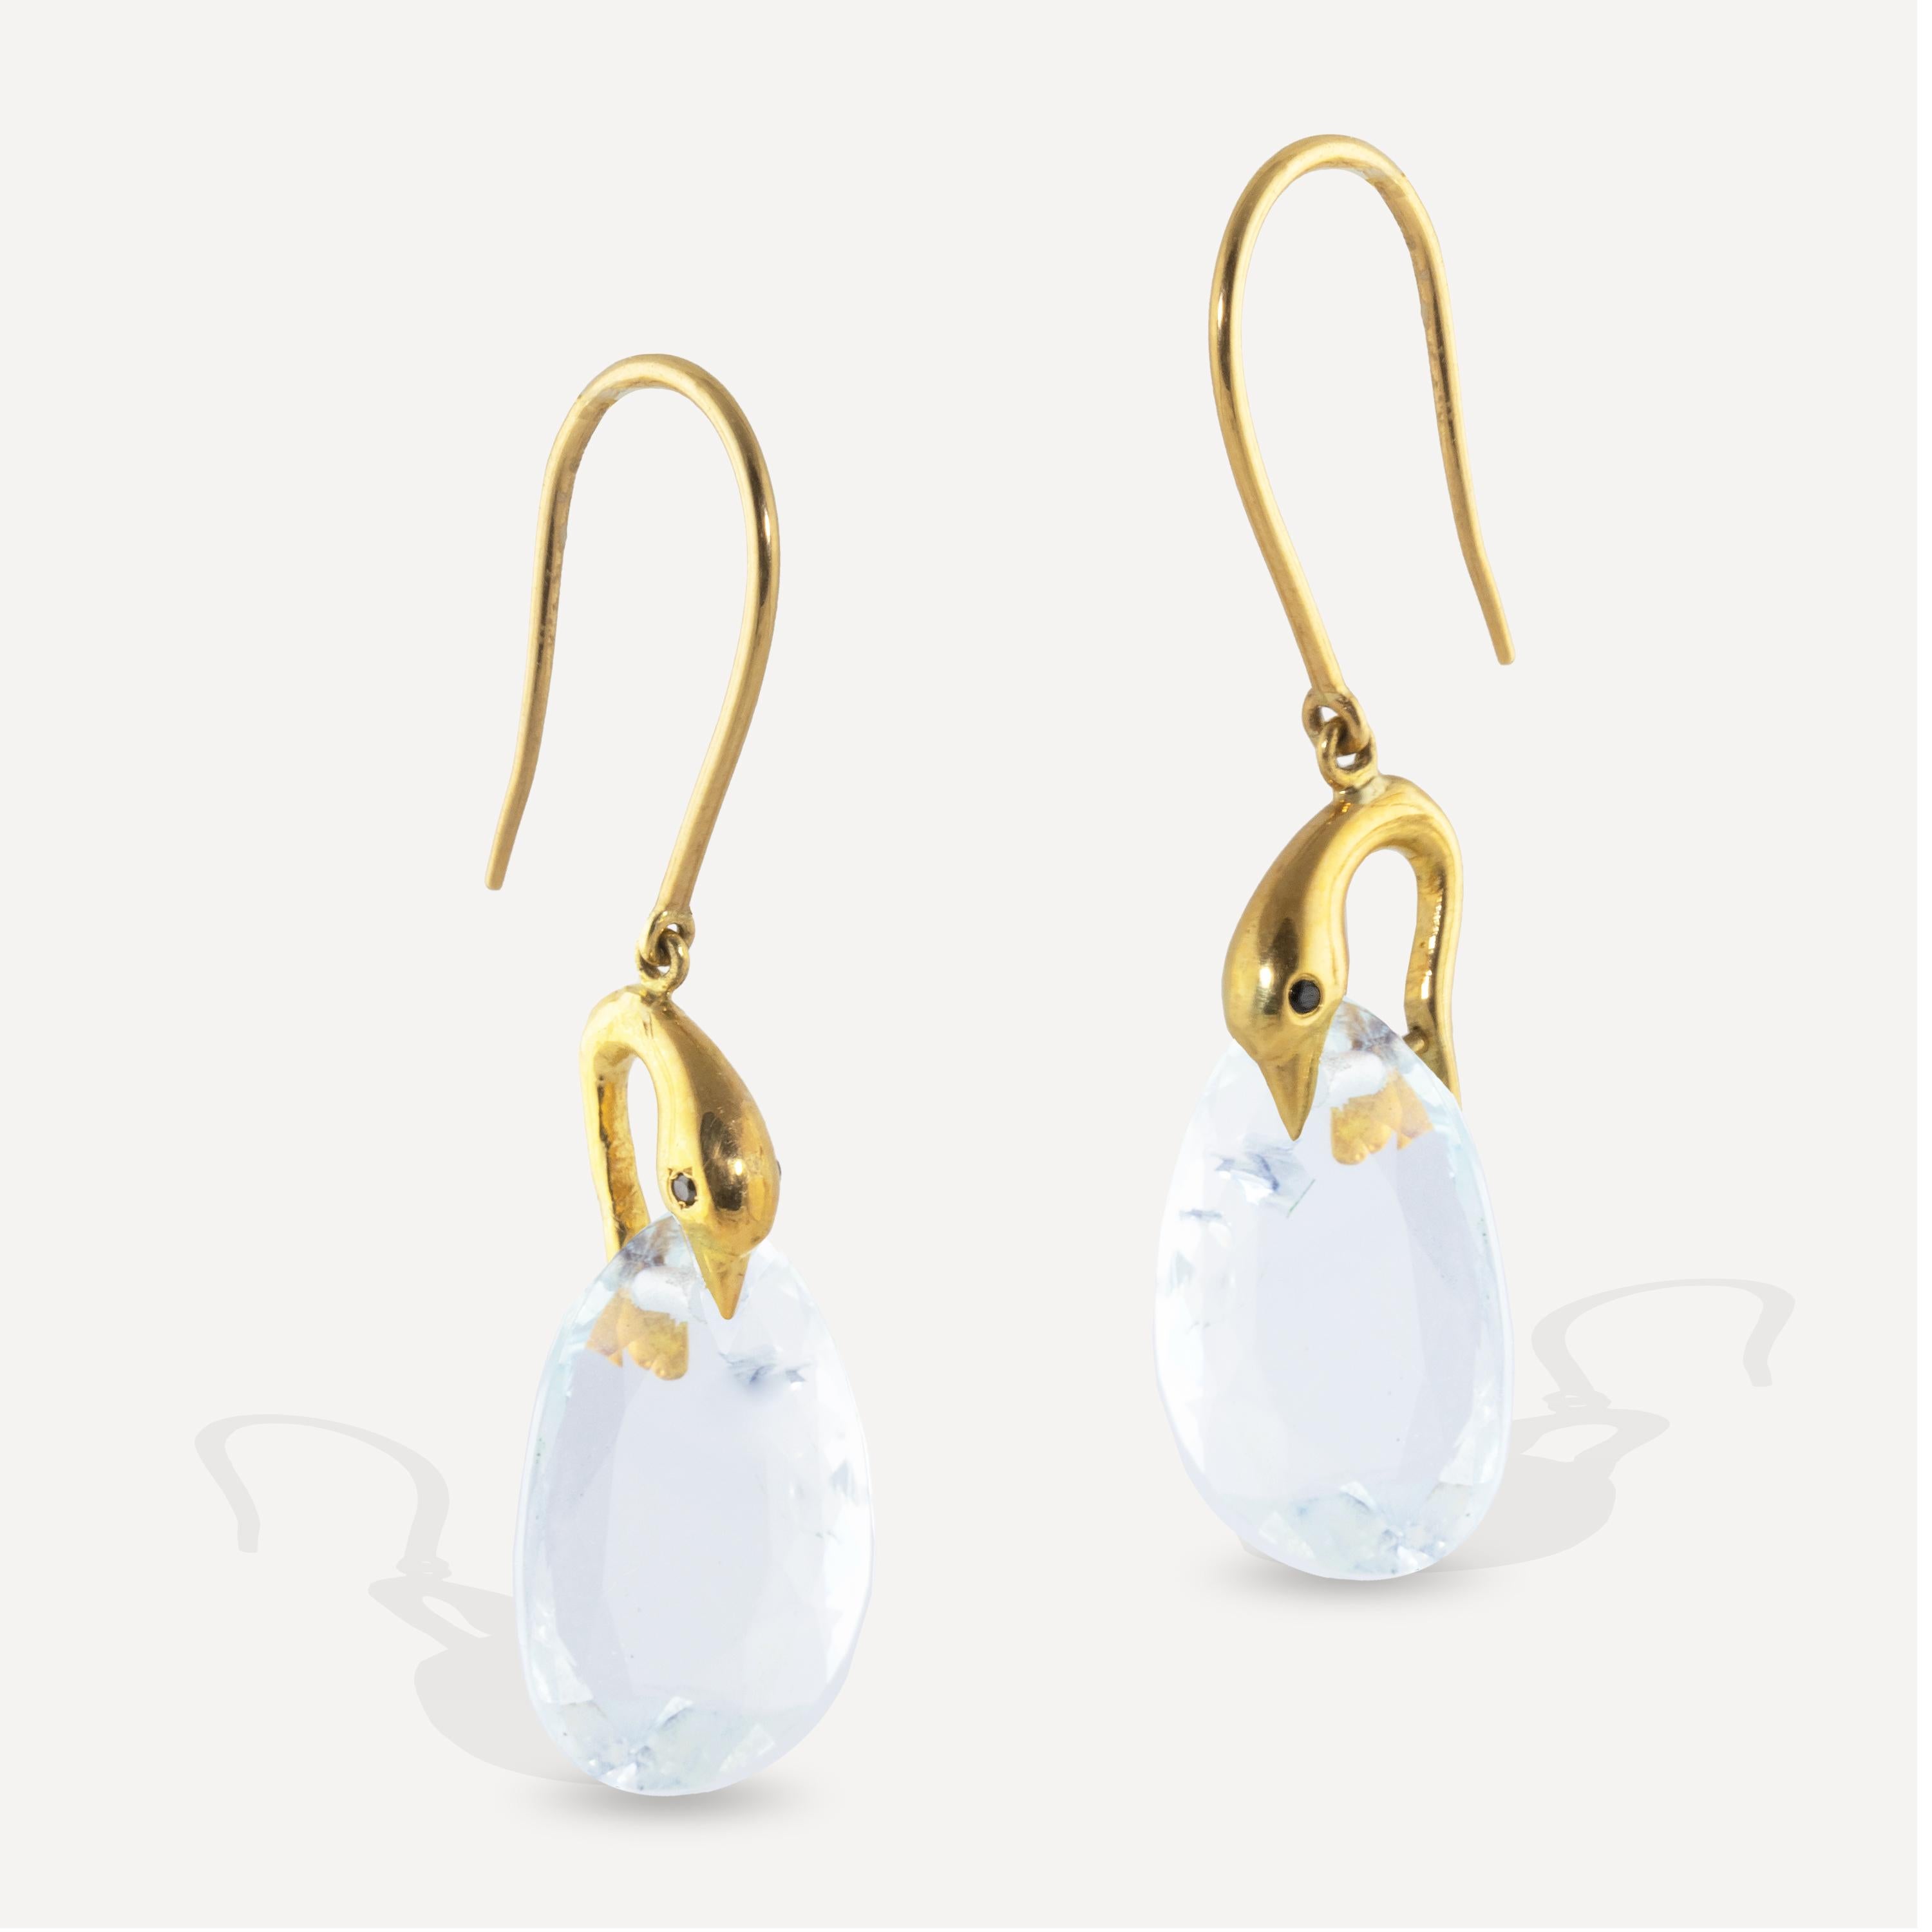 20 carat gold earrings